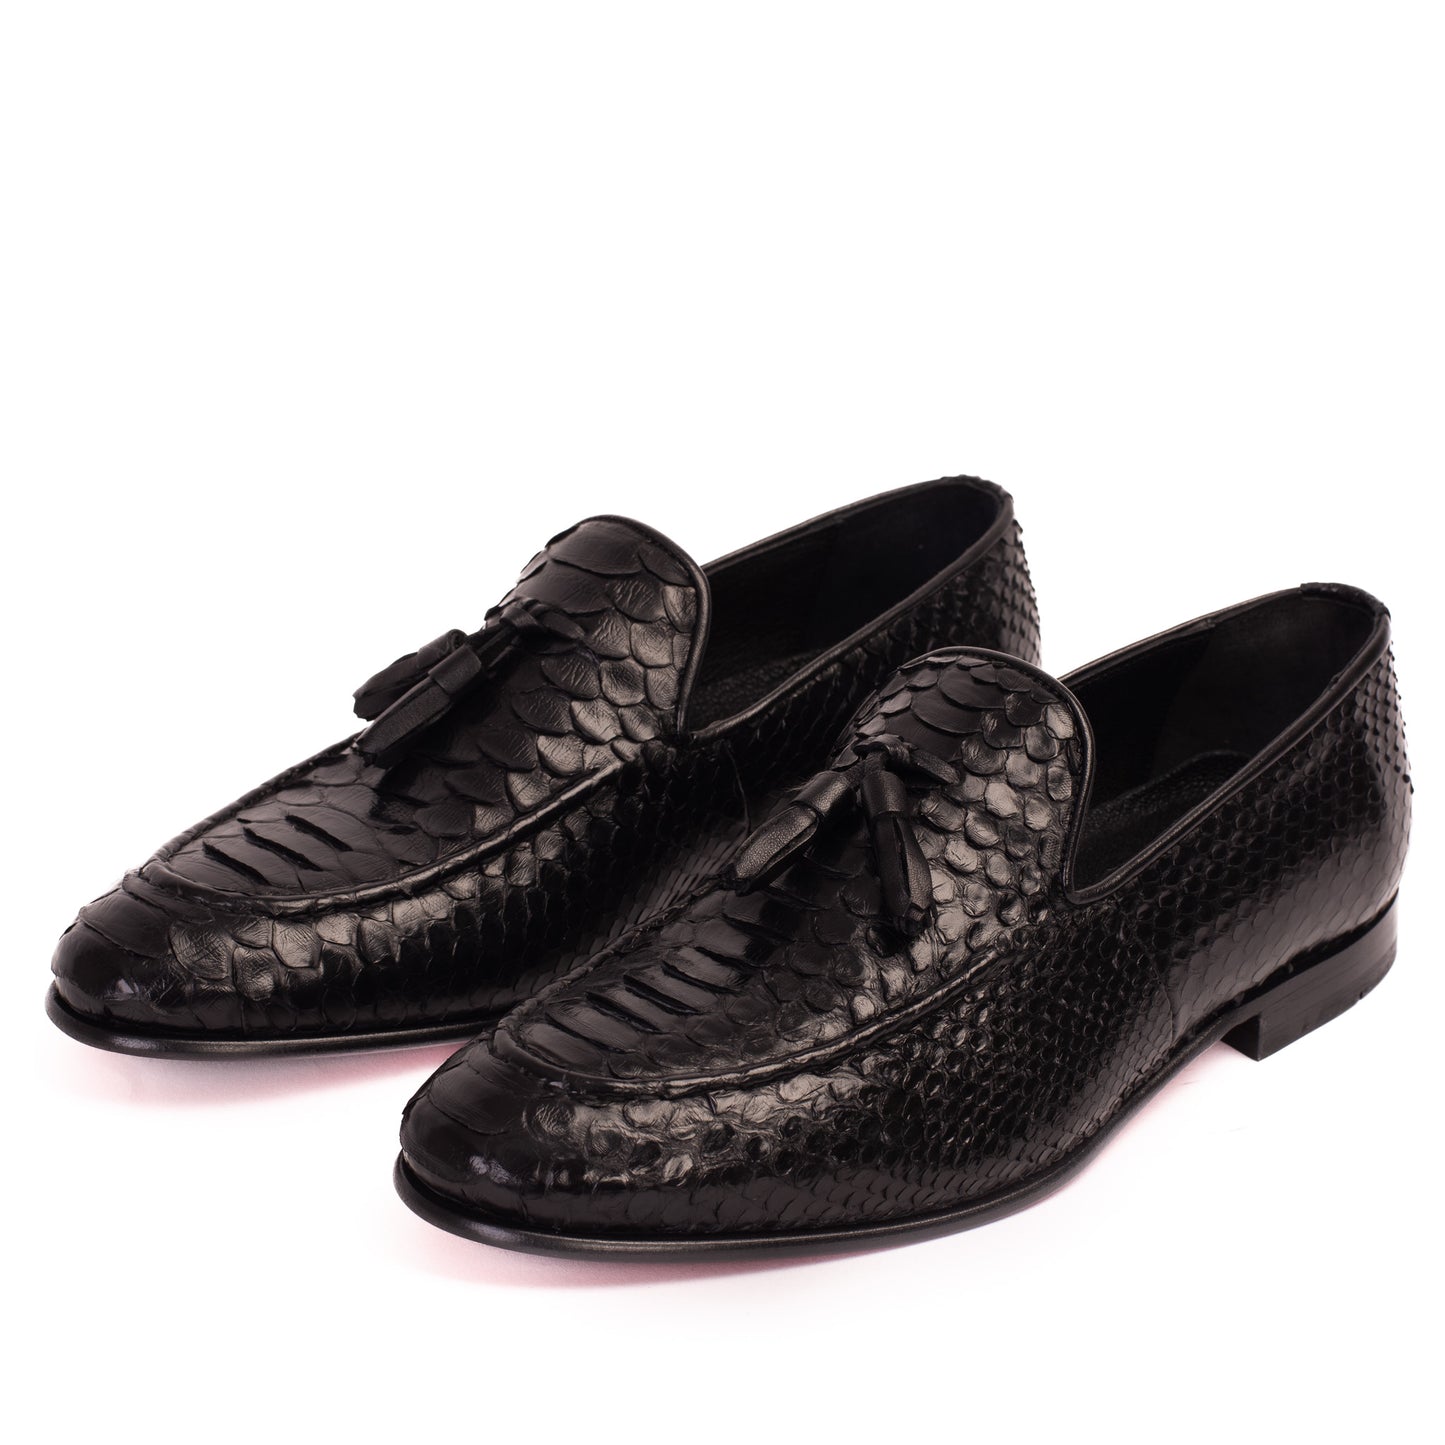 The Bethesda Black Pyhtn Skin Leather Tassel Loafer Men  Shoe